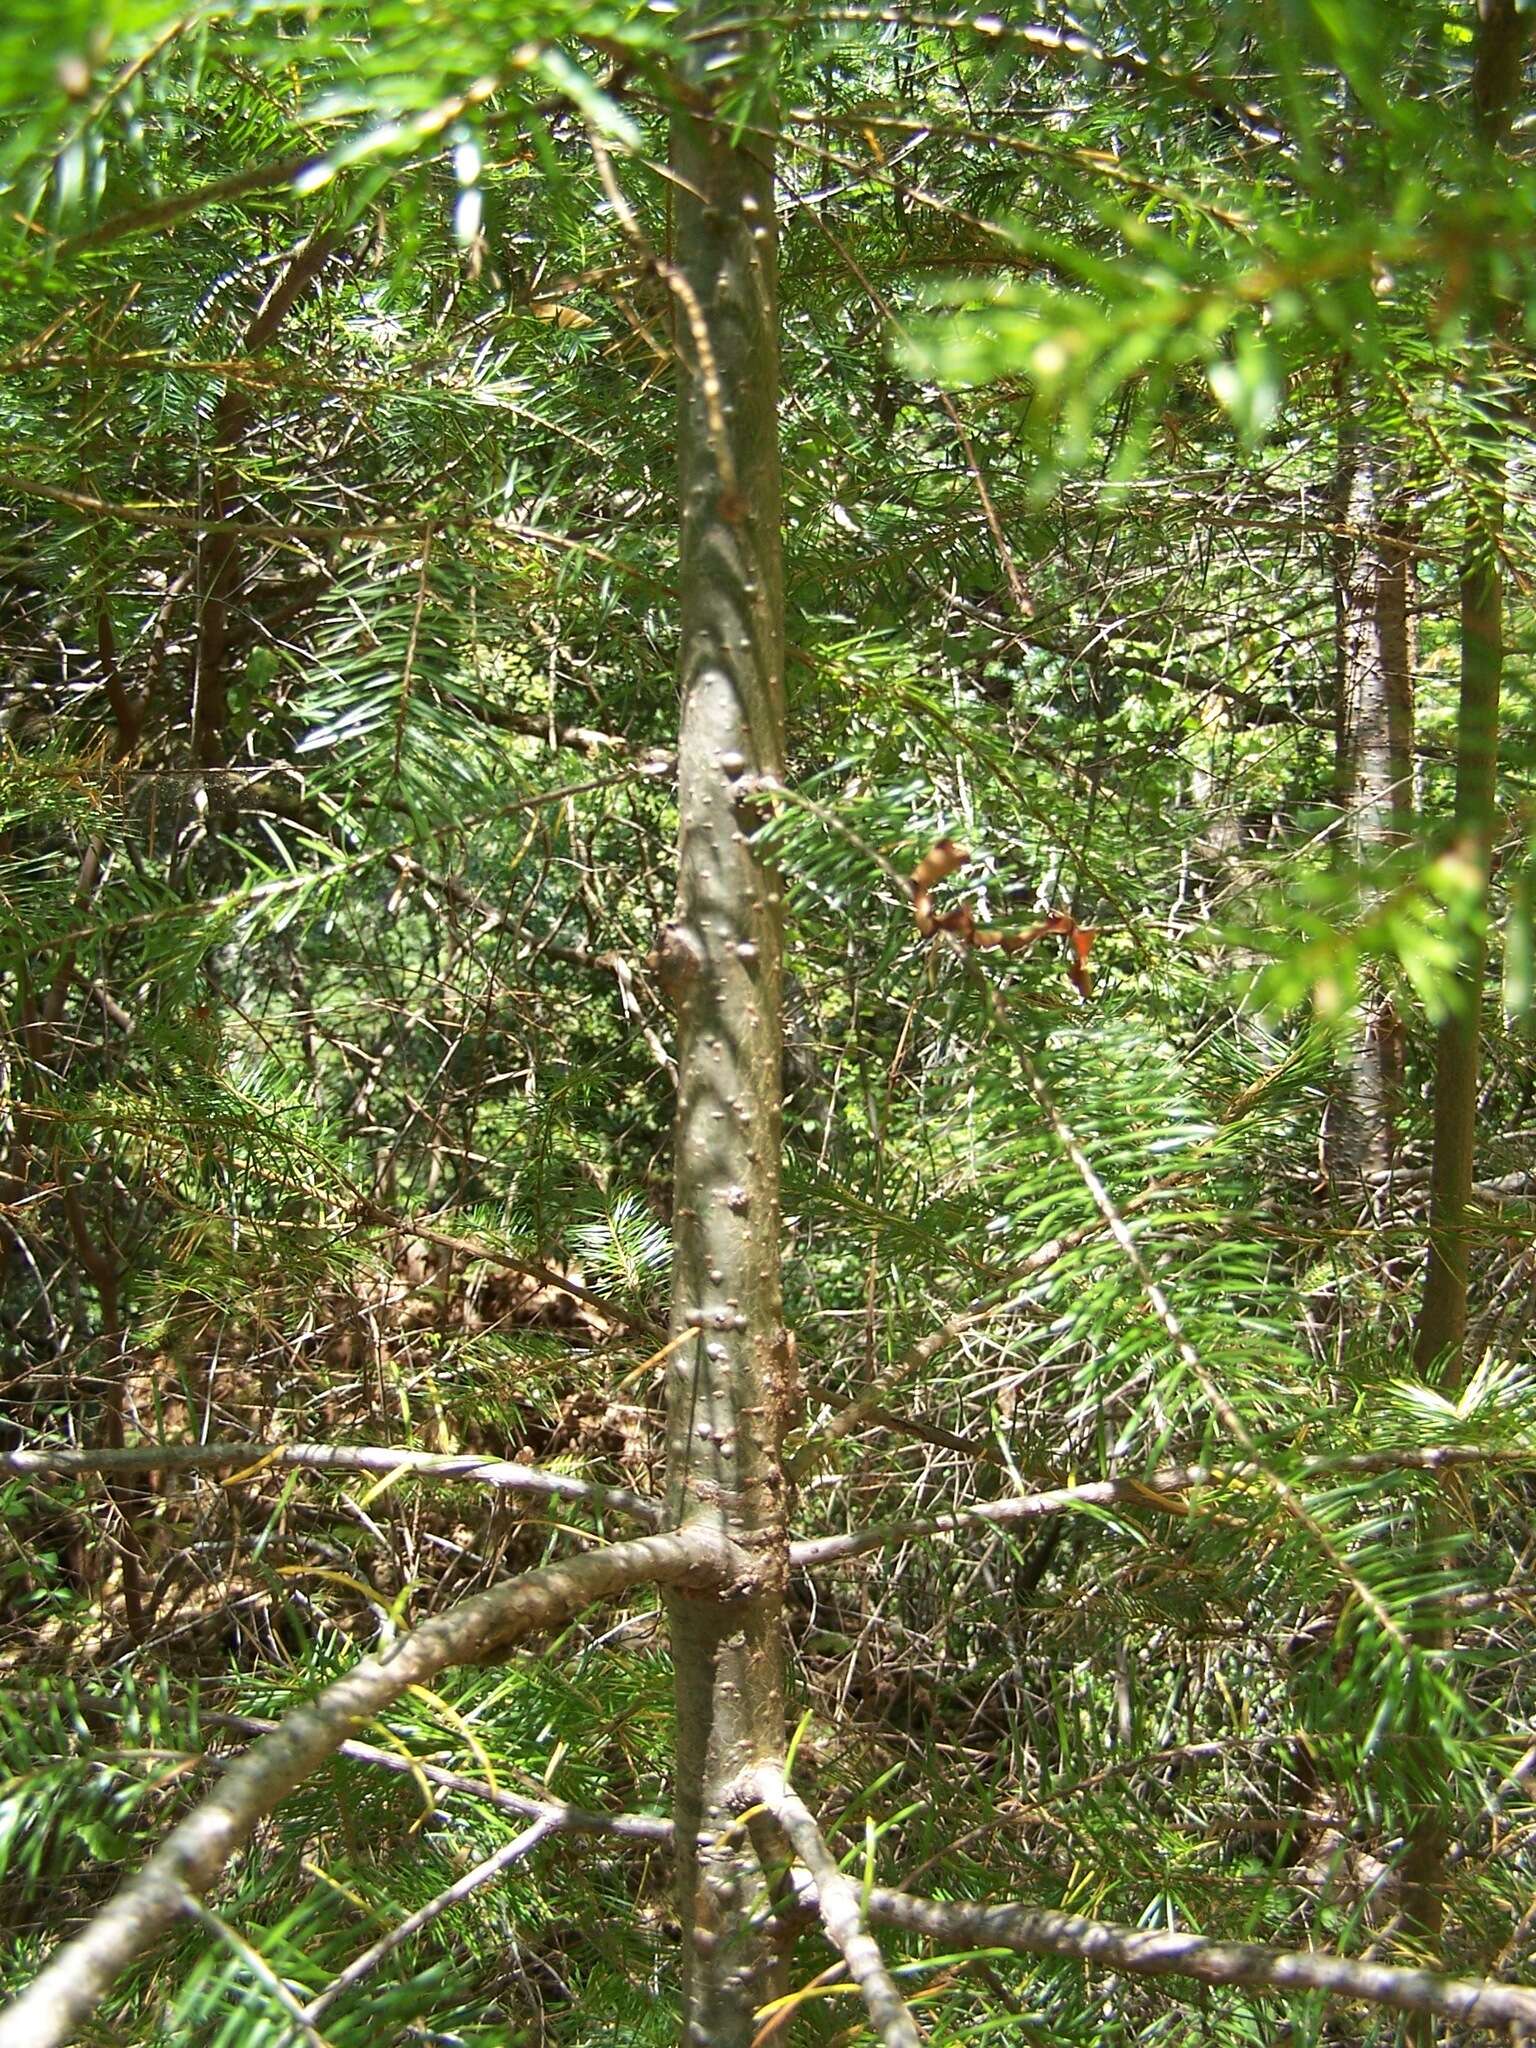 Image of Douglas-fir